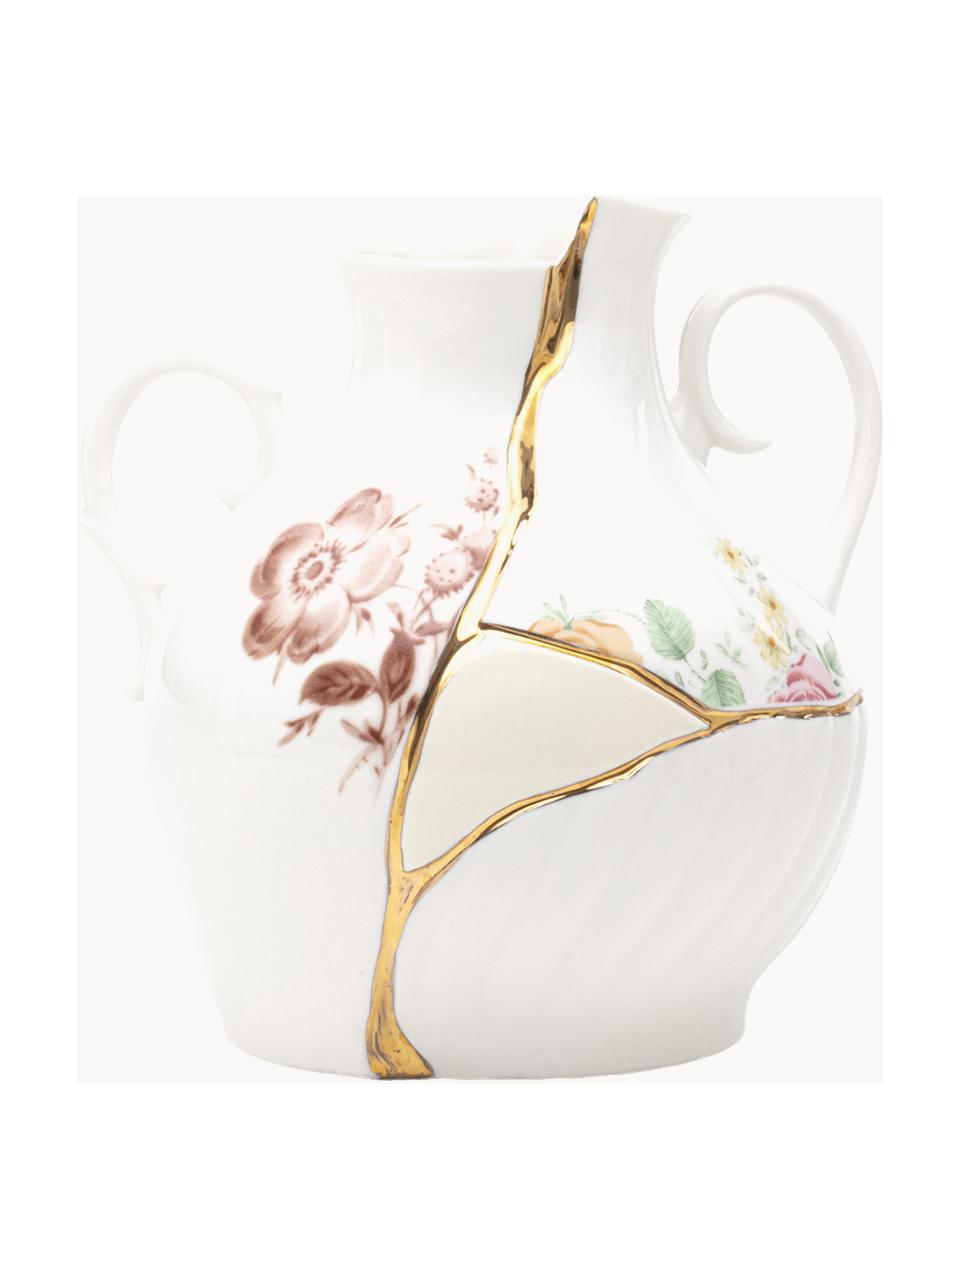 Vase Kintsugi aus Fine Bone China, H 19 cm, Vase: FIne Bone China, Dekor: 24-Karat Gold, Weiss glänzend, Mehrfarbig, B 18 x H 19 cm